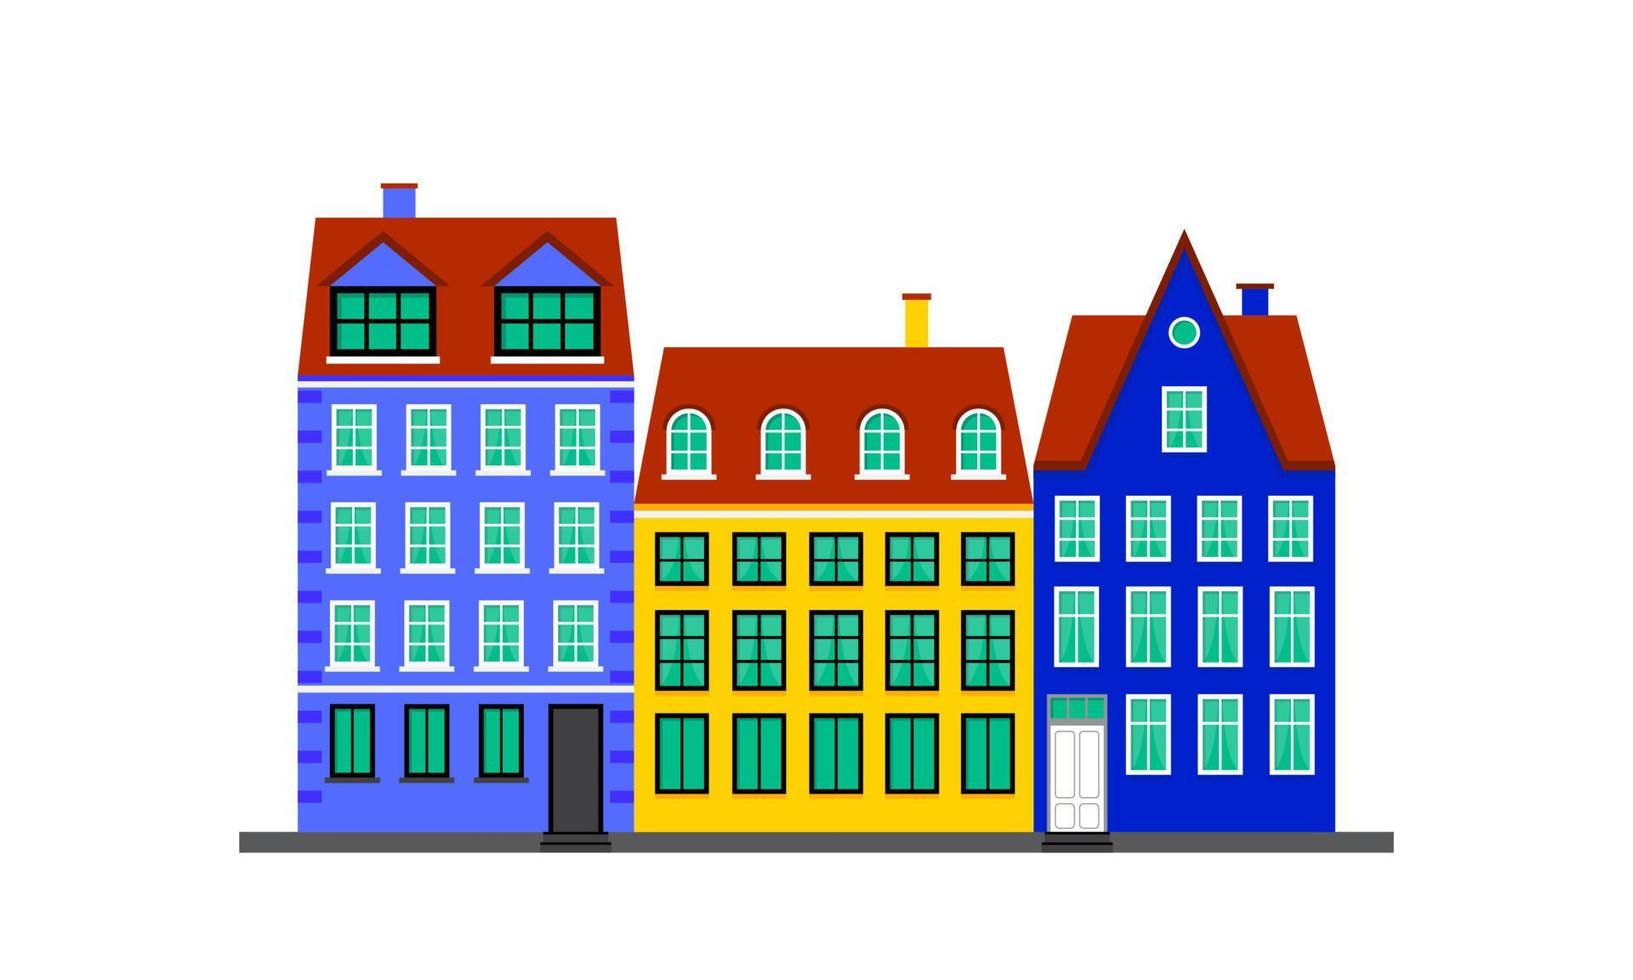 vida urbana. casas coloridas no estilo escandinavo. paisagem com fachadas de edifícios. ilustração vetorial isolada no fundo branco vetor